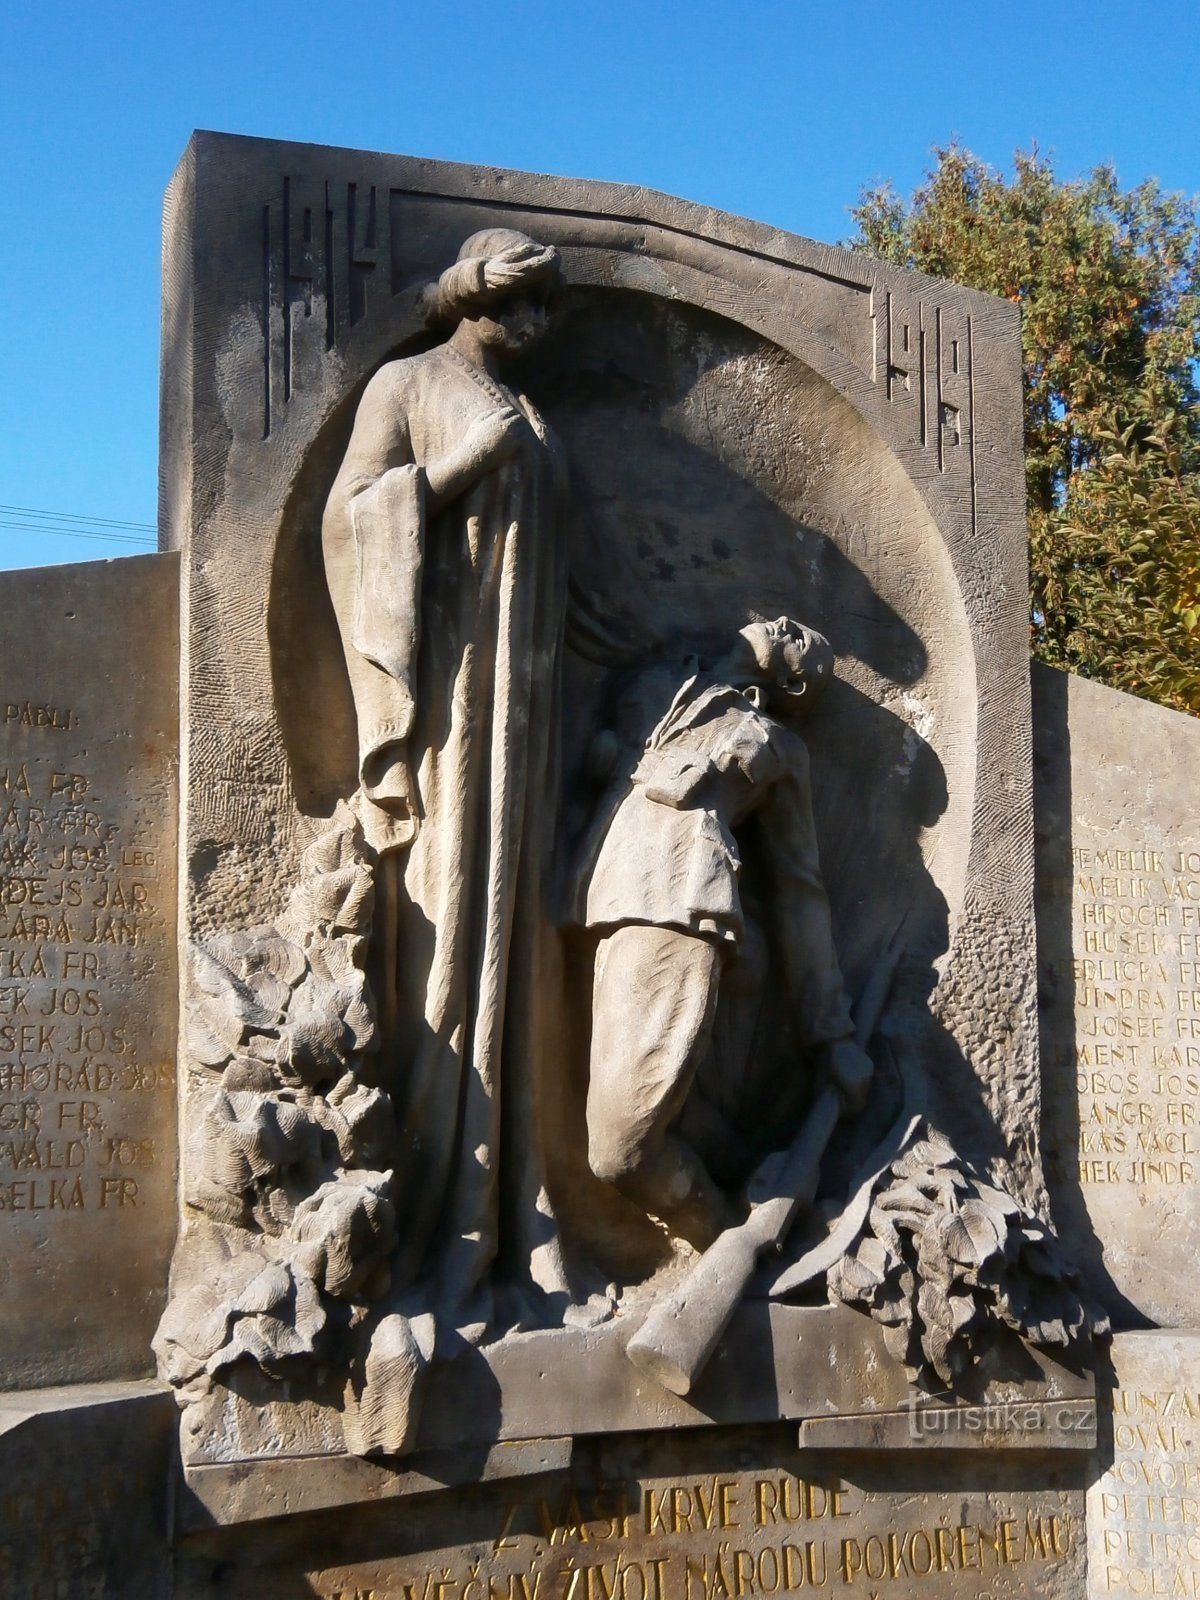 Đài tưởng niệm những người đã chết trong Chiến tranh thế giới thứ nhất ở Nové Hradec Králové (Hradec Králové, 1/7.10.2016/XNUMX)